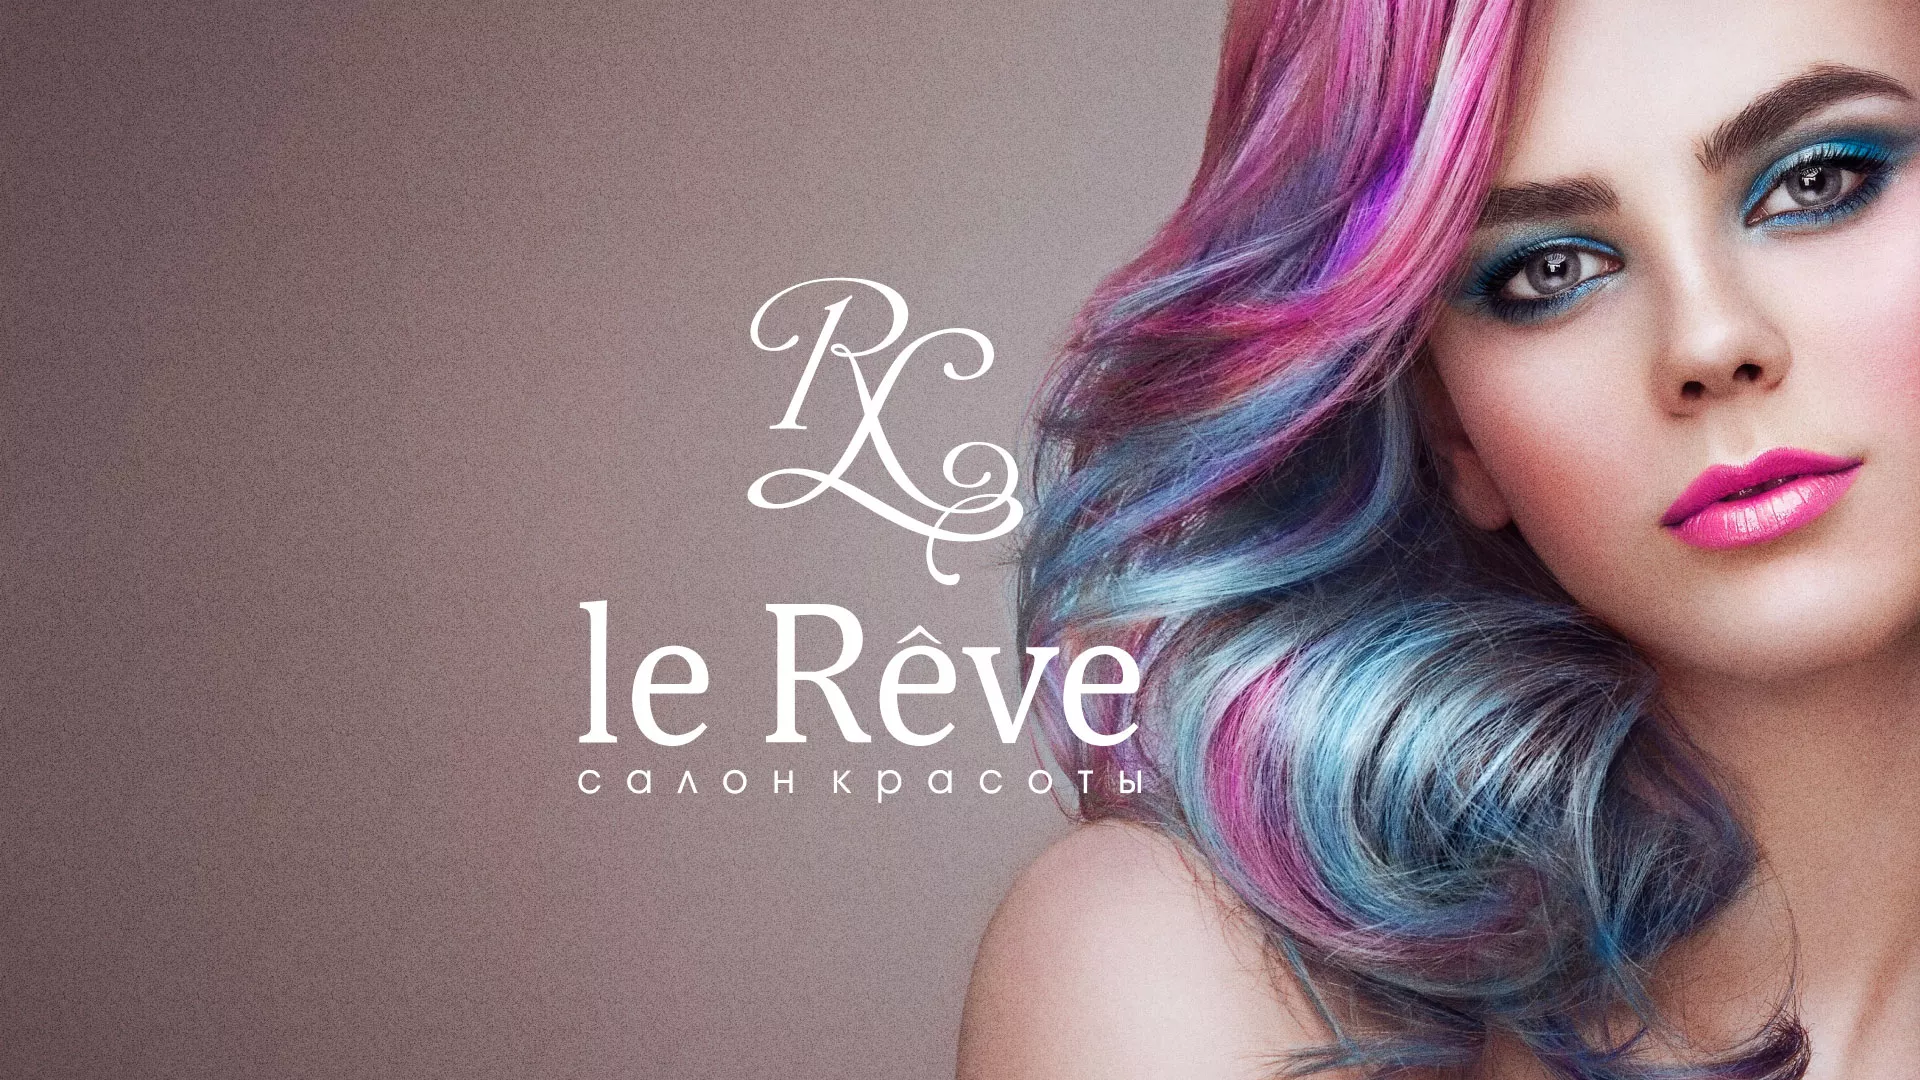 Создание сайта для салона красоты «Le Reve» в Бокситогорске